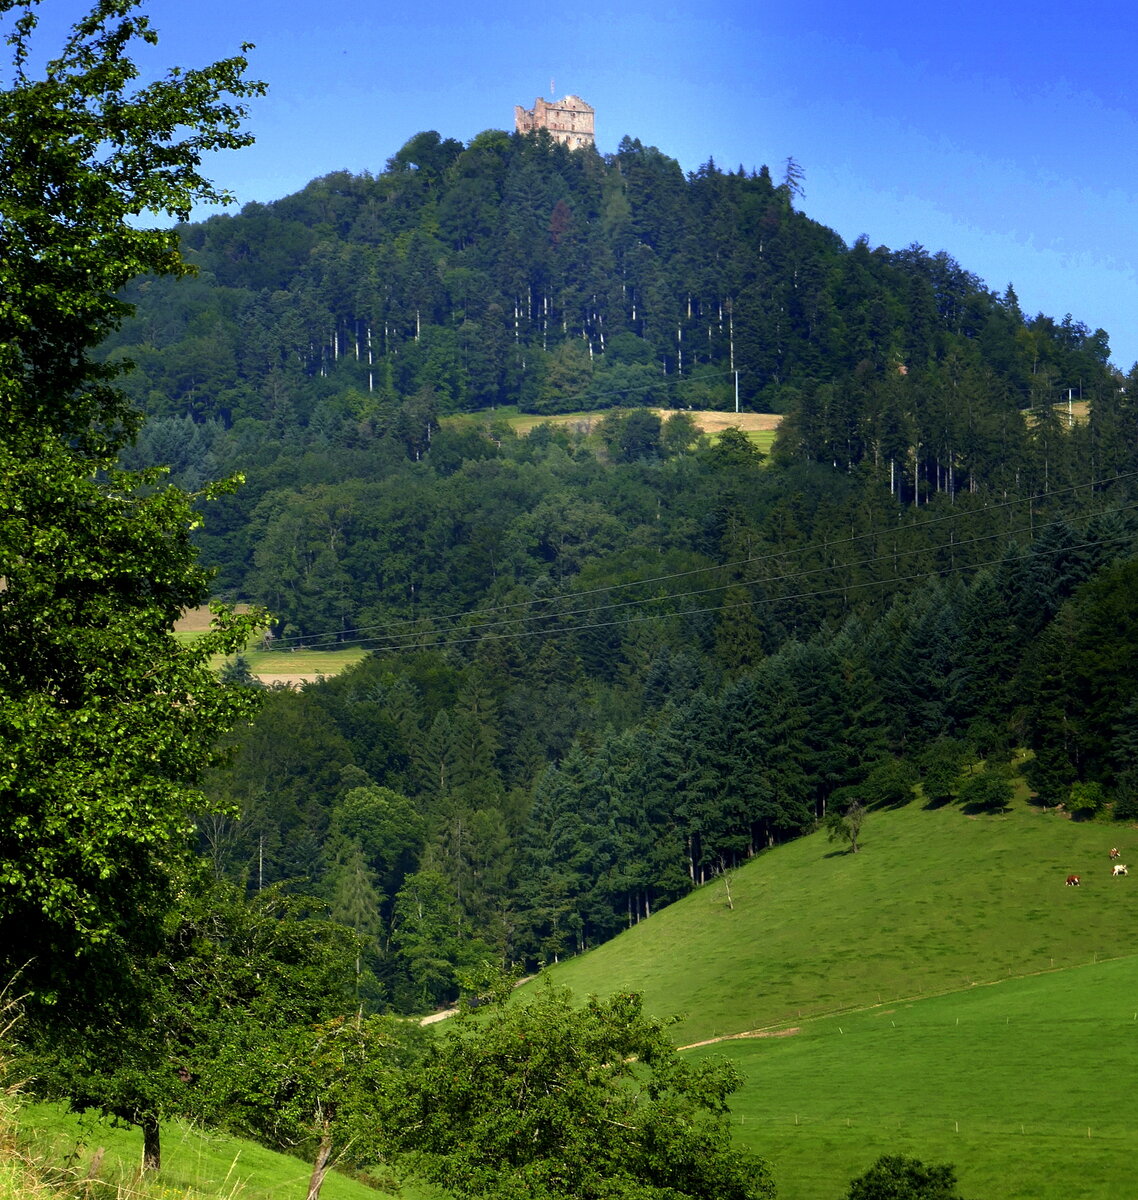 Blick vom Emmersbachtal zur Burgruine Hohengeroldseck, mittlerer Schwarzwald, Juli 2021